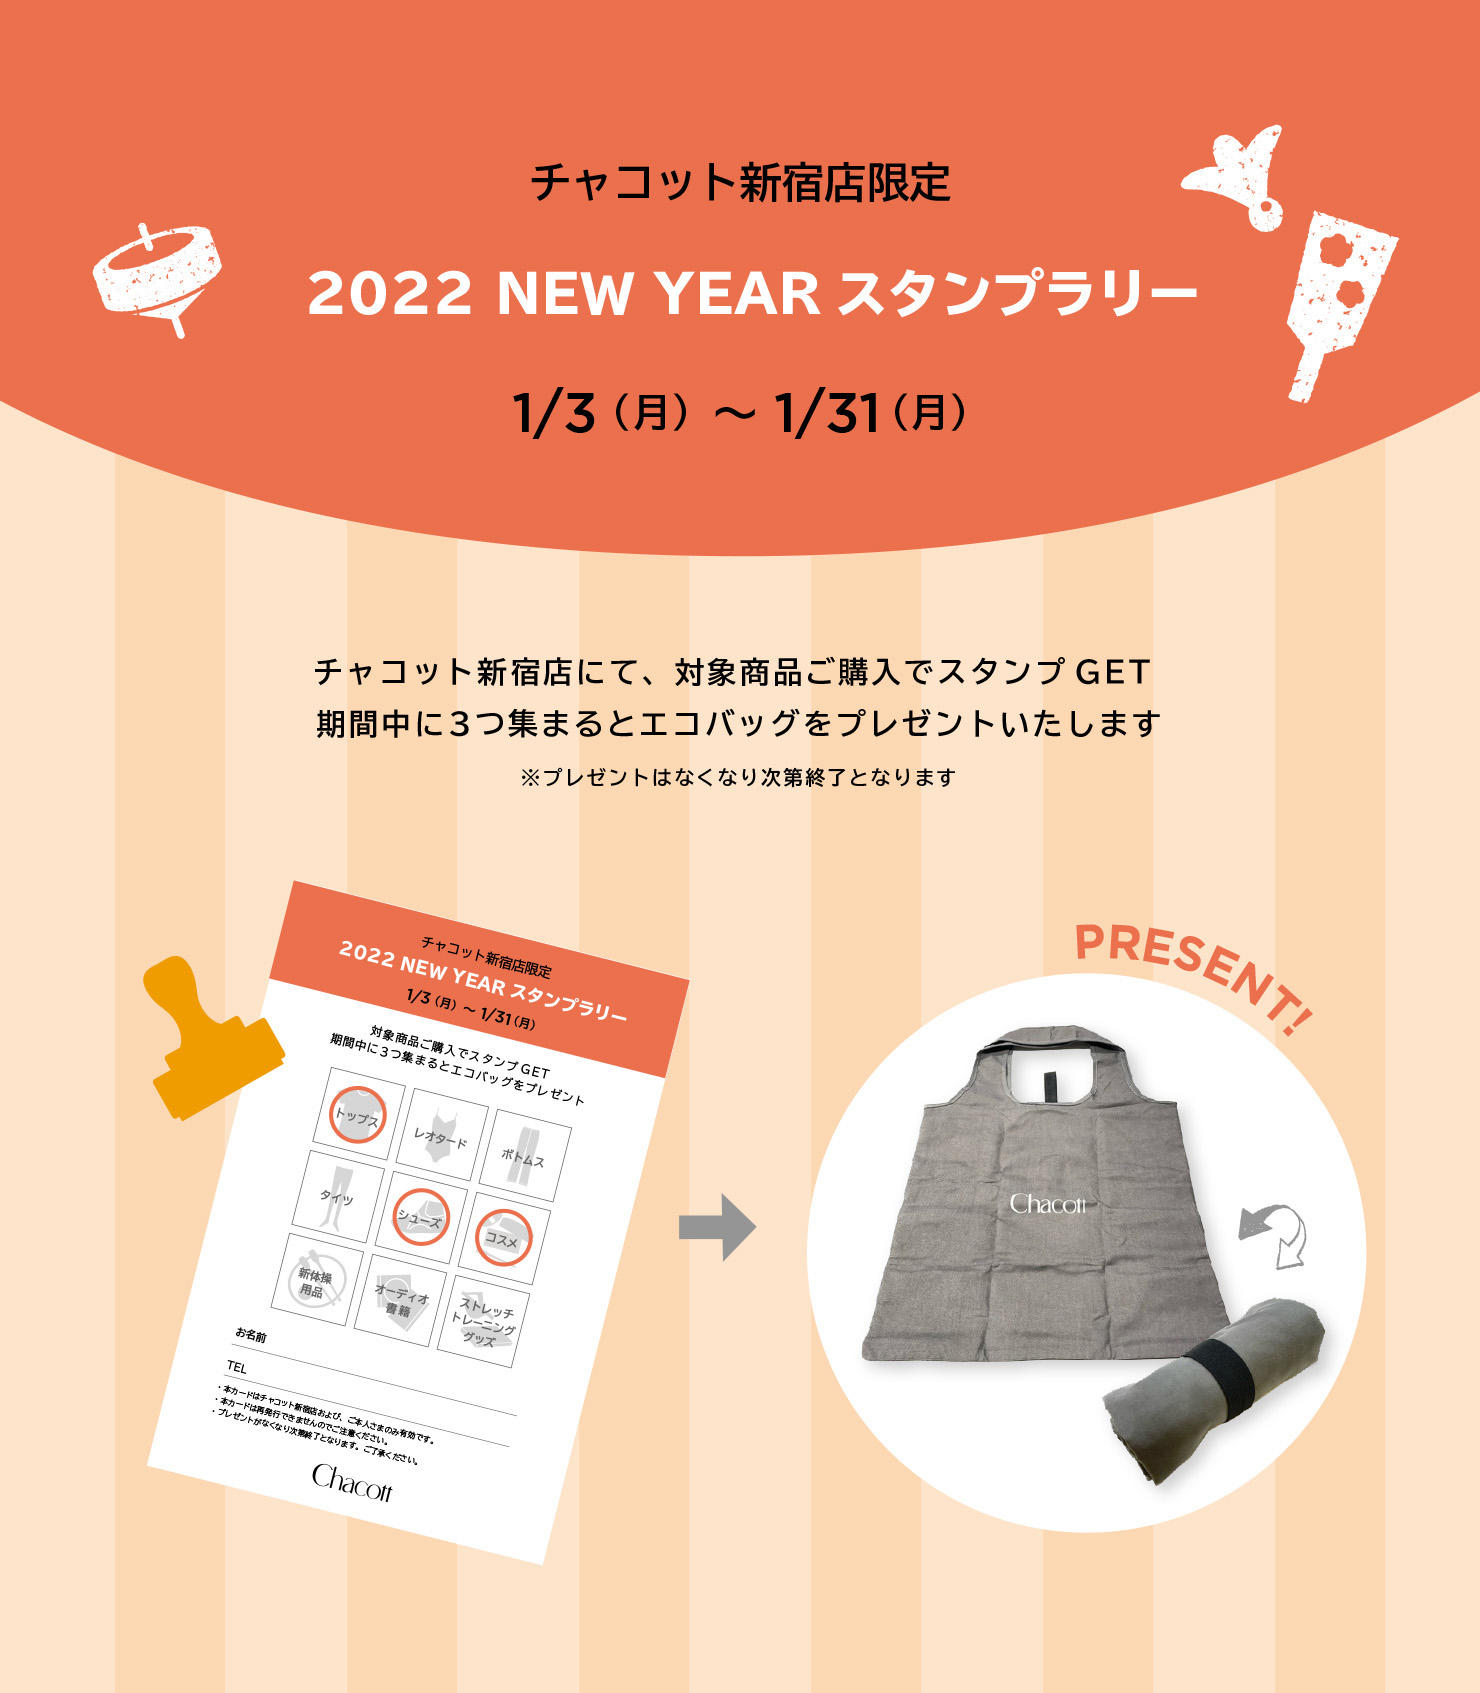 2022_1_shinjuku_1480.jpg